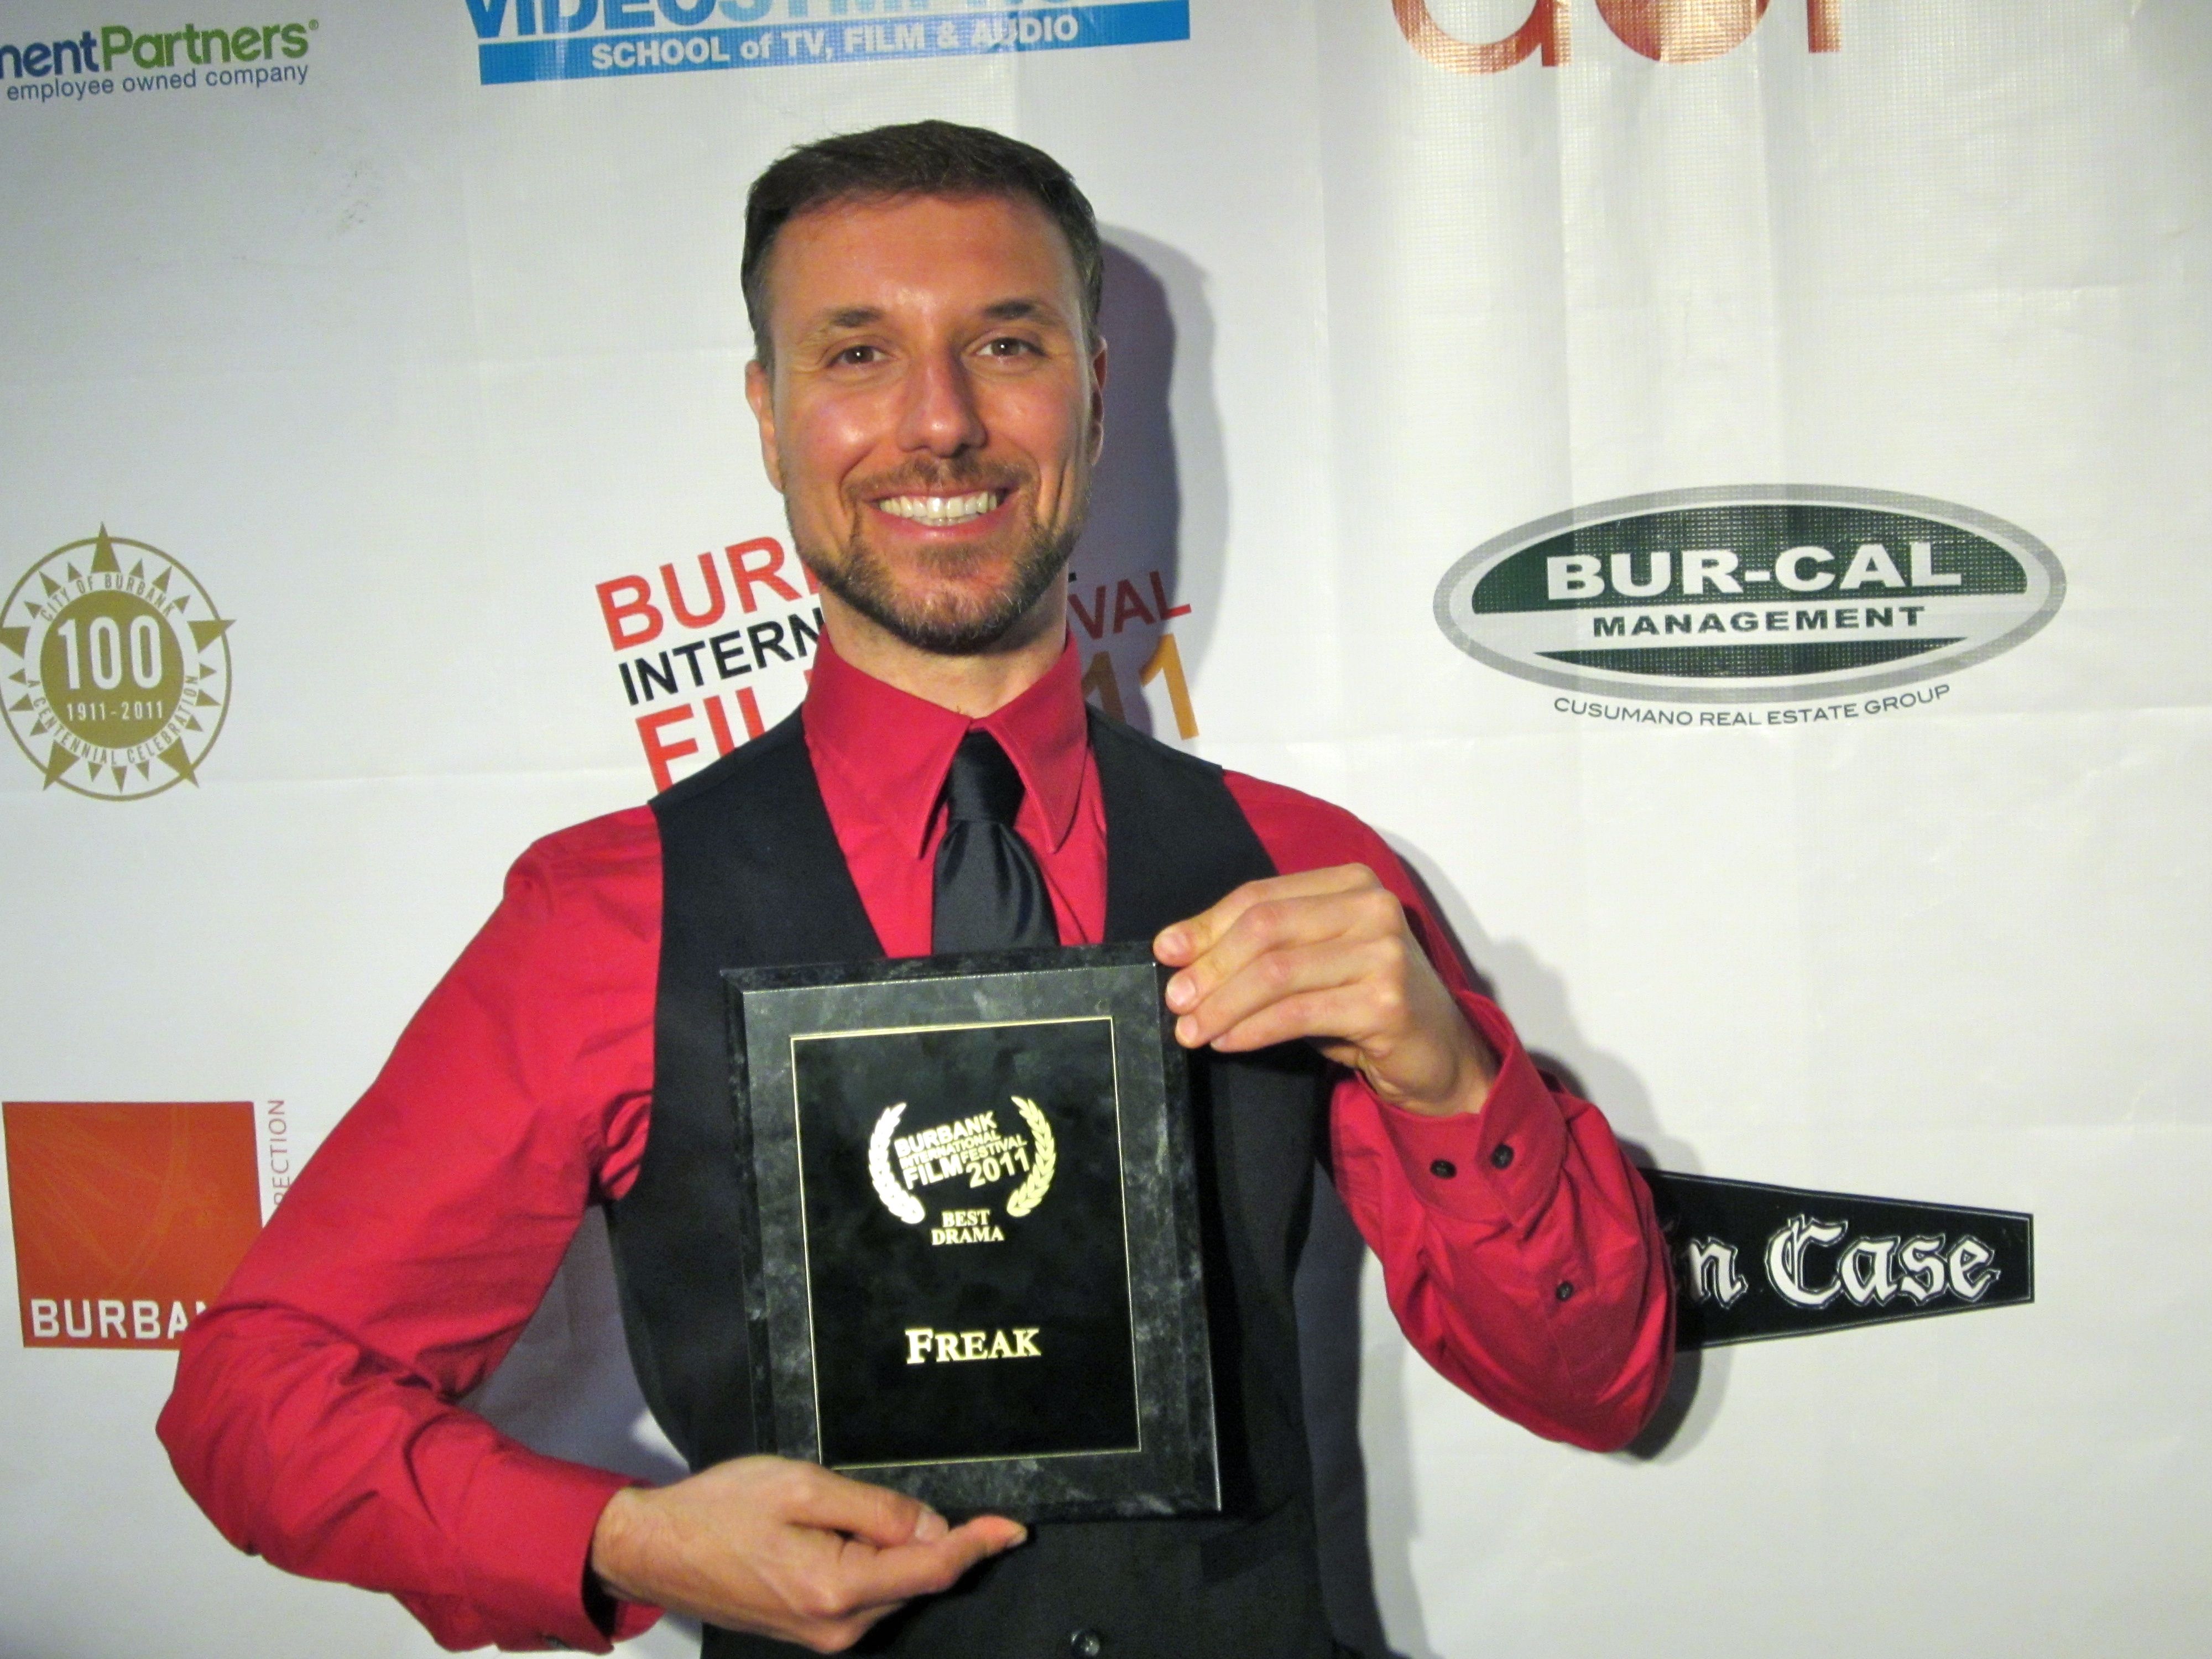 Eric Casaccio at the Burbank International Film Festival representing 